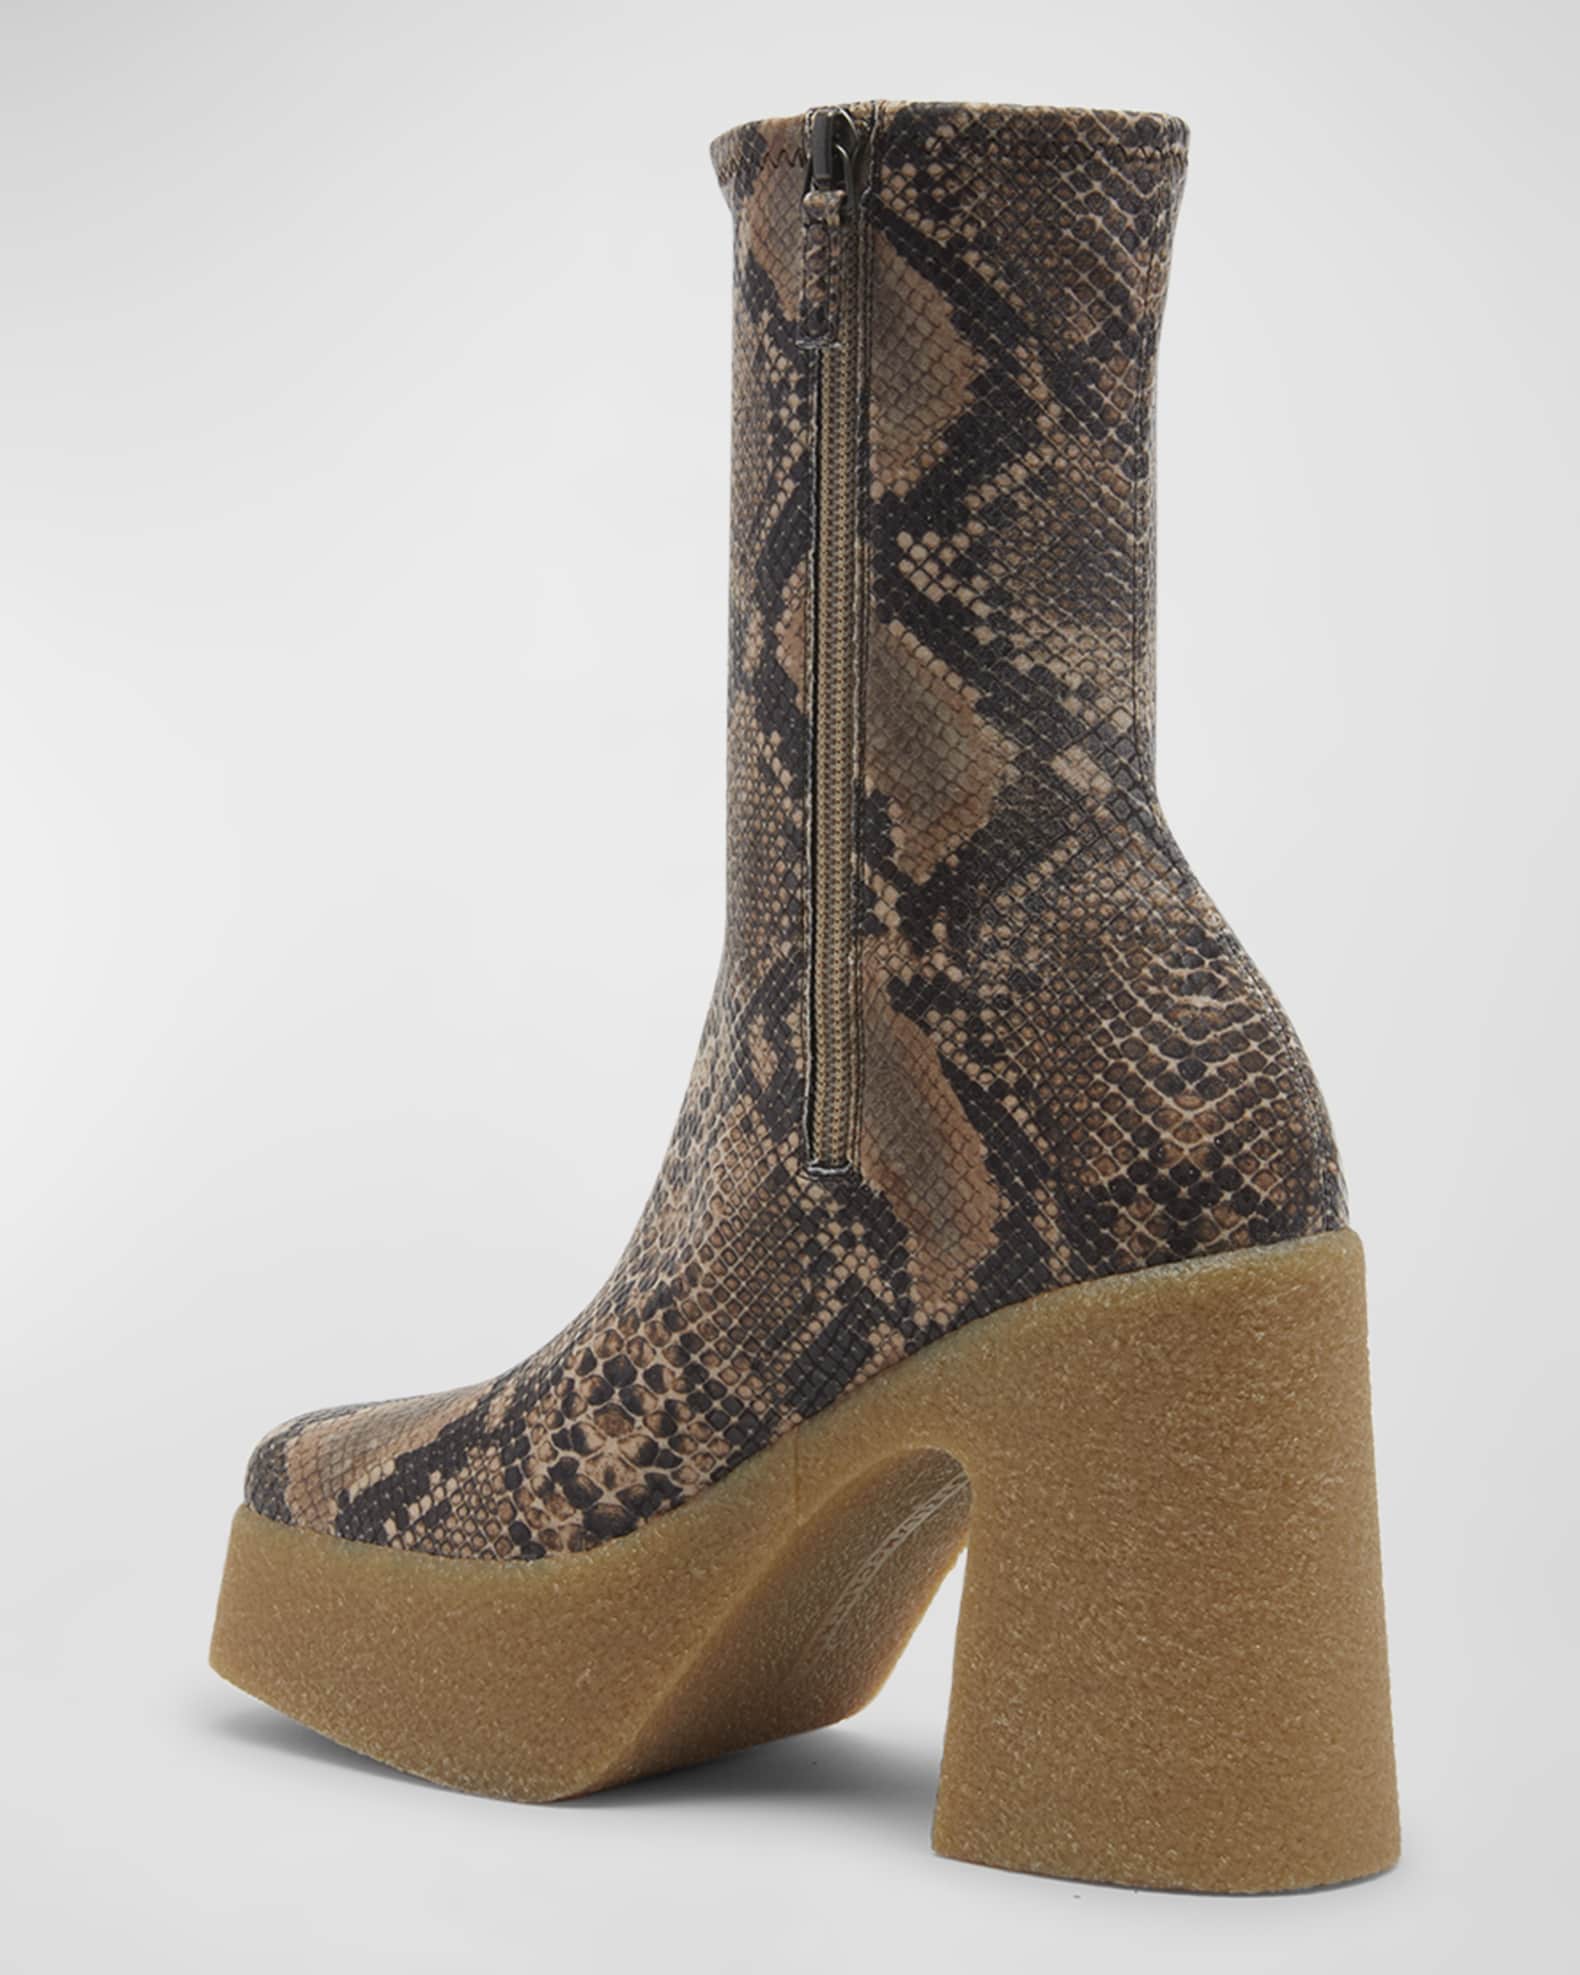 Stella McCartney Skyla Recycled Snake-Print Platform Ankle Boots ...